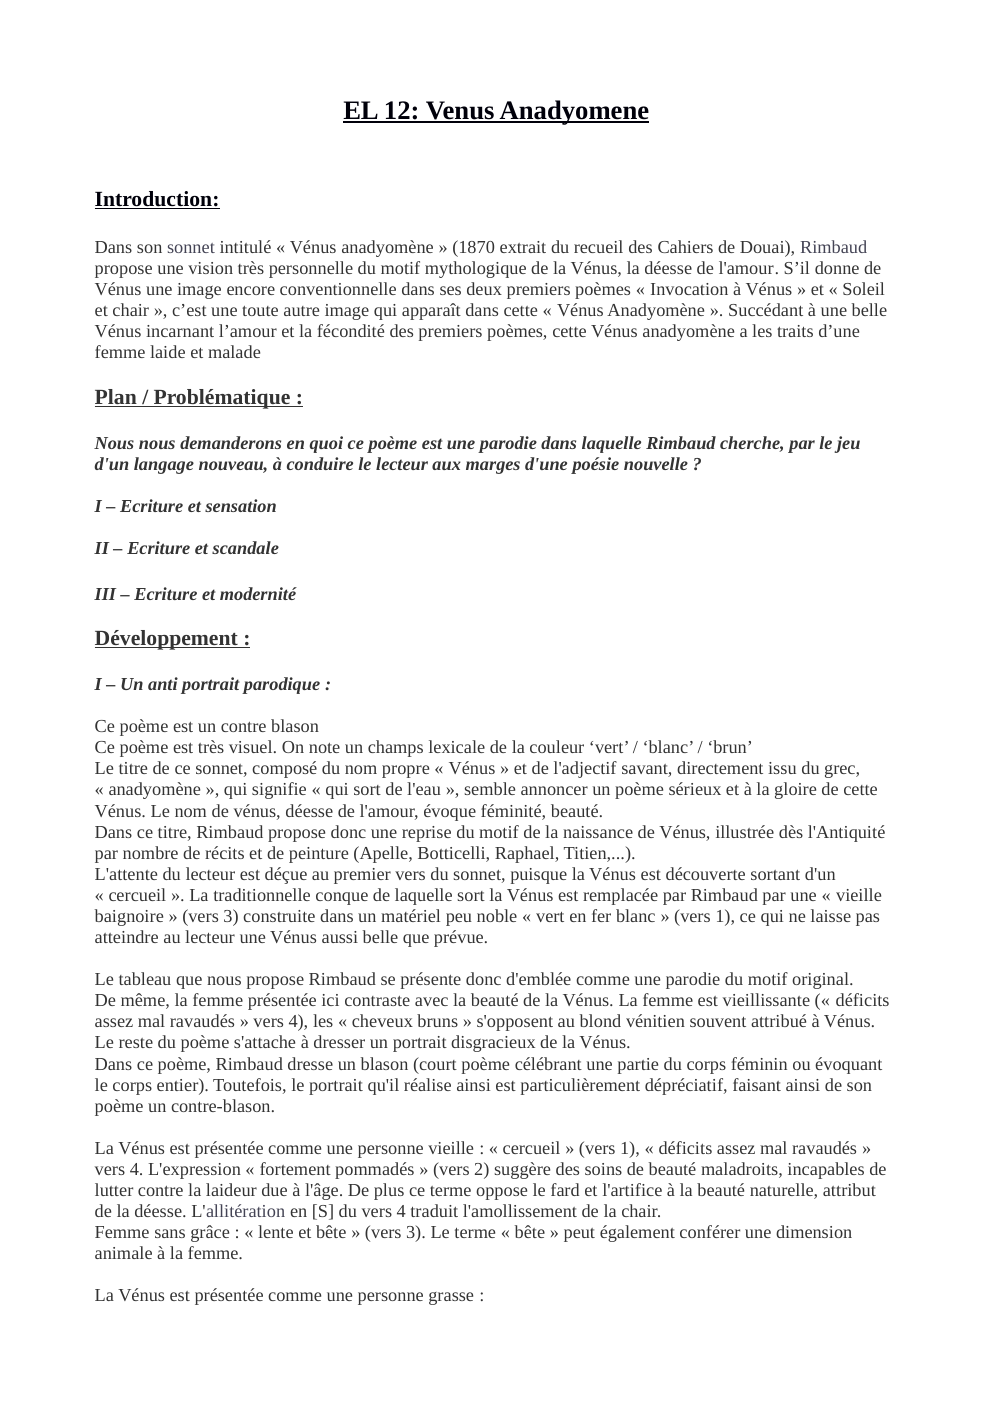 Prévisualisation du document etude lineaire "Vénus Anadyomène" de Rimbaud